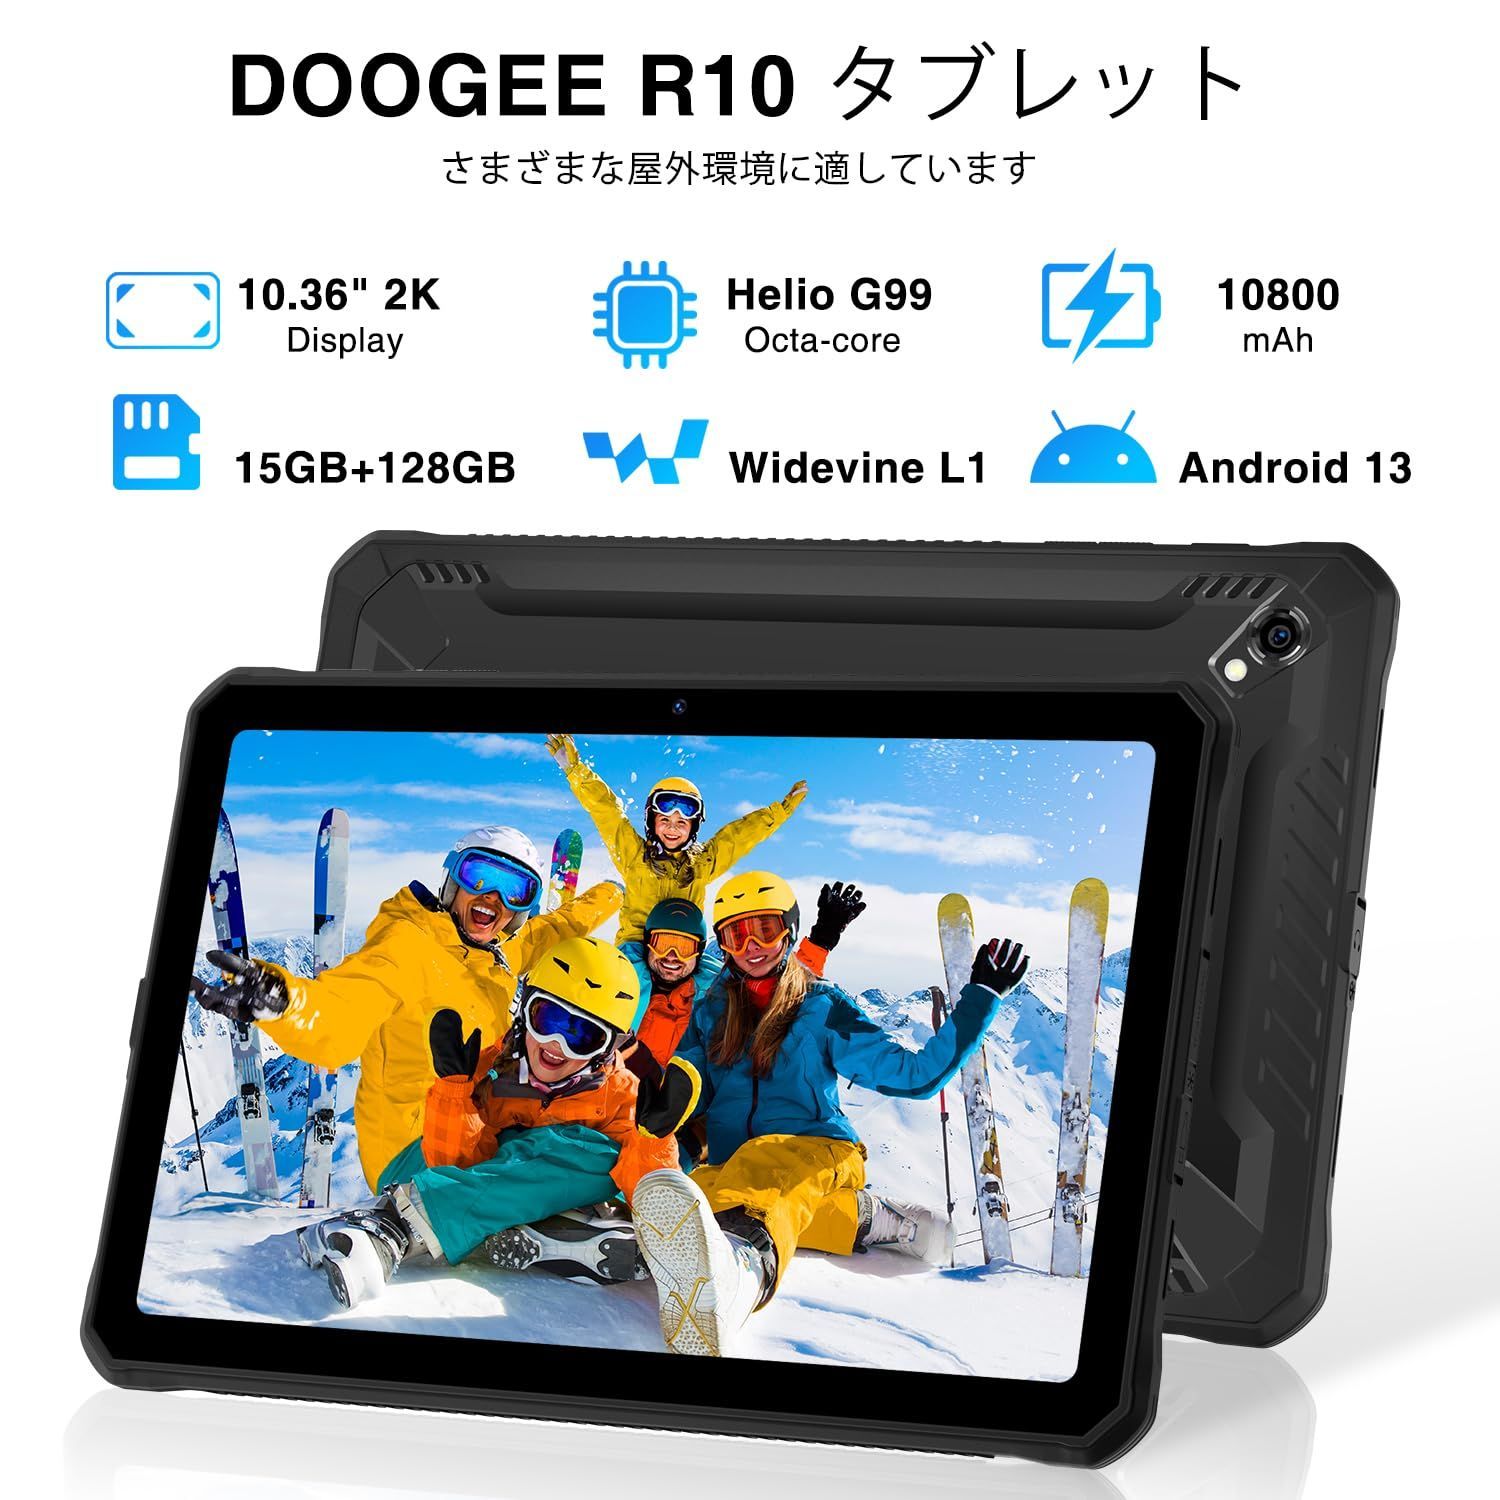 Androidタブレット 15GB+128GB デュアル4GLTE+5G-